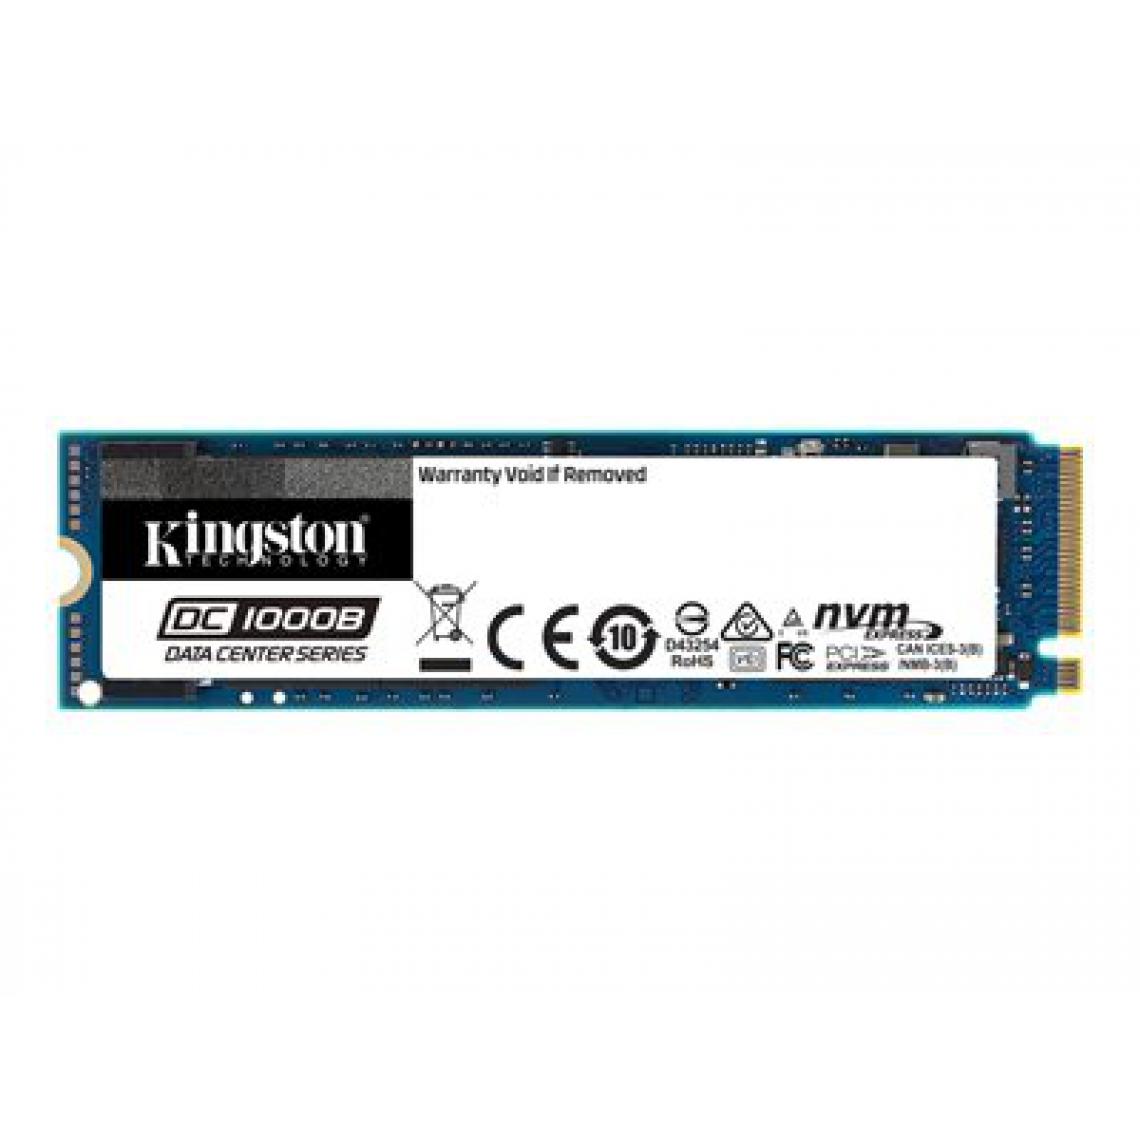 Kingston - DC1000B 960Go M.2 2280 Ent SSD DC1000B 960Go M.2 2280 Enterprise NVMe SSD - SSD Interne